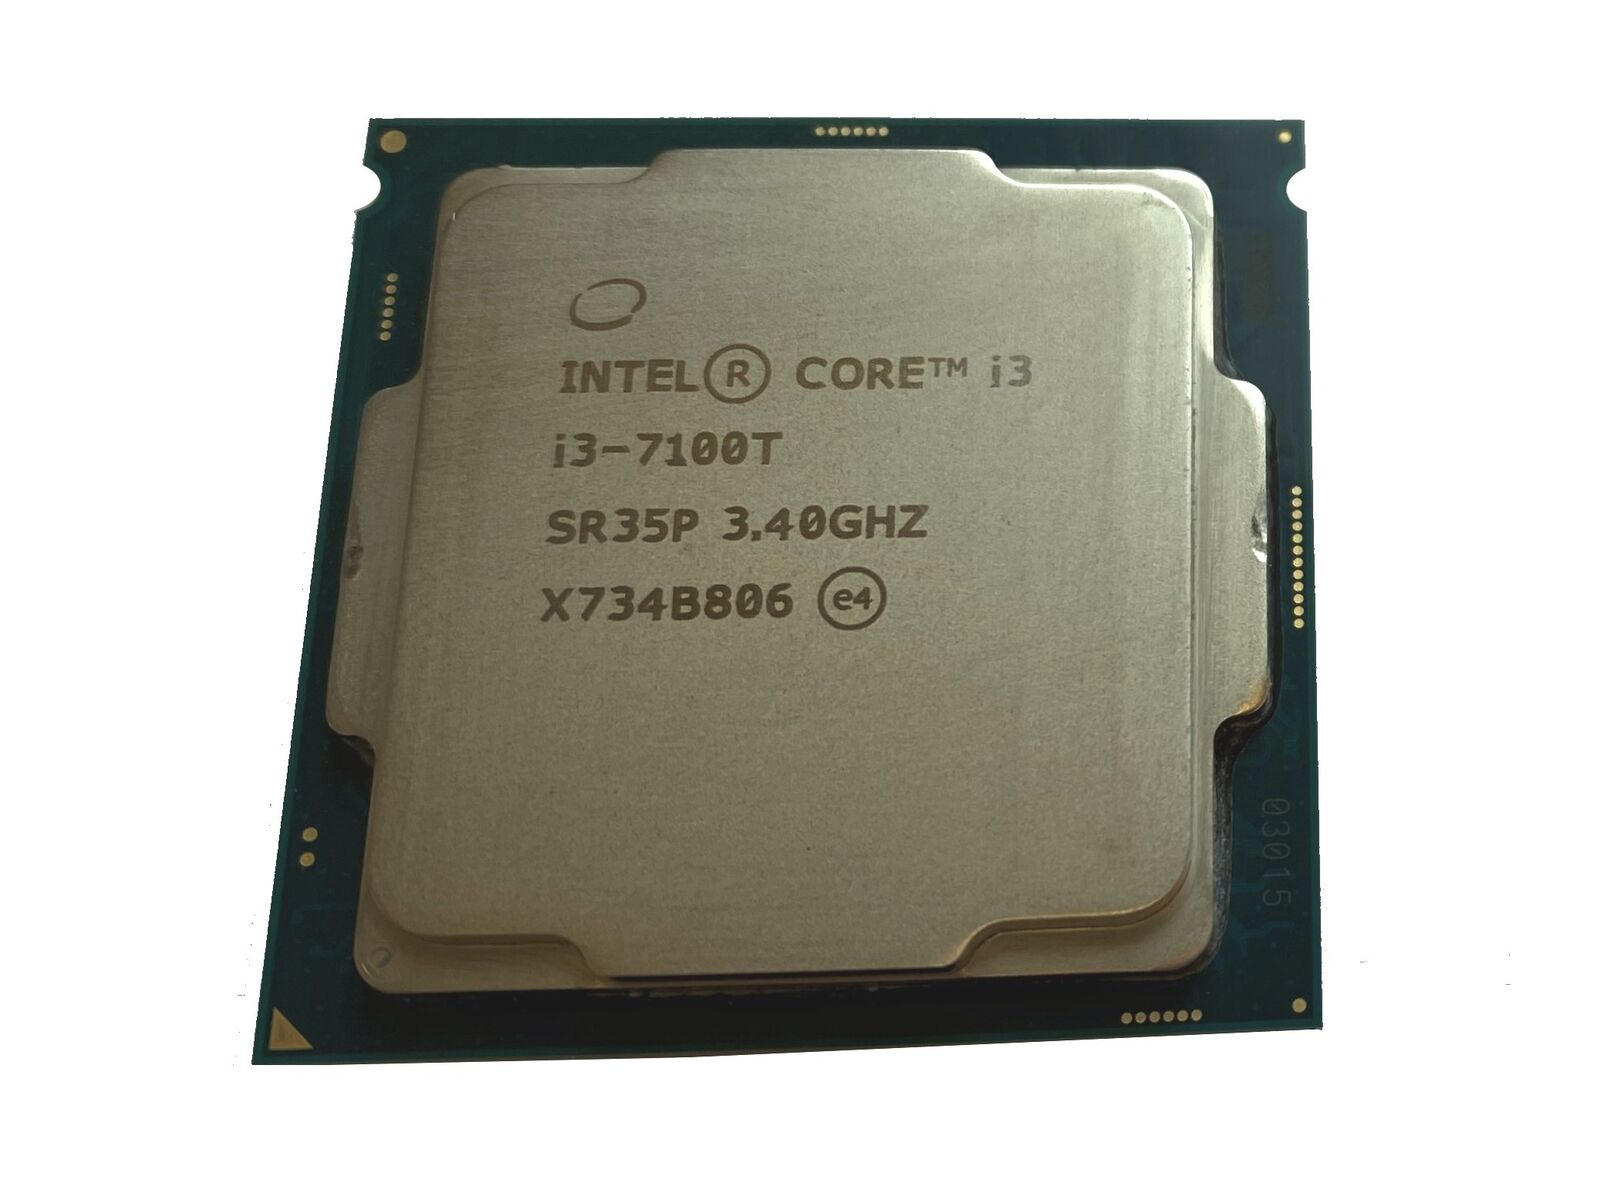 Intel Core I3-7100T 3.4GHz 3MB Cache Socket LGA1151 CPU Processor SR35P